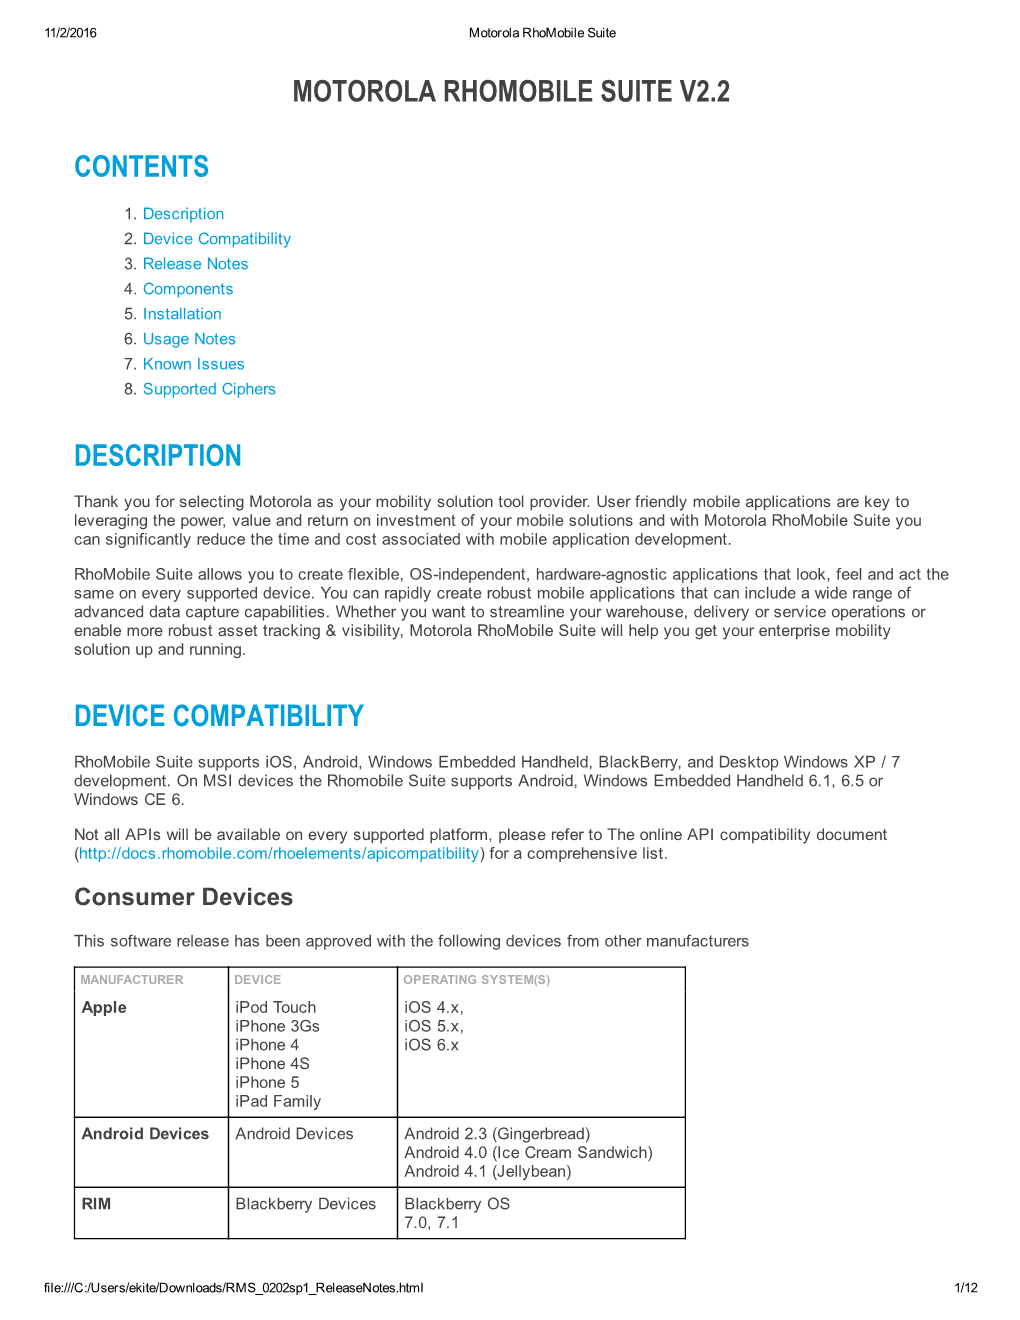 Motorola Rhomobile Suite V2.2 Contents Description Device Compatibility